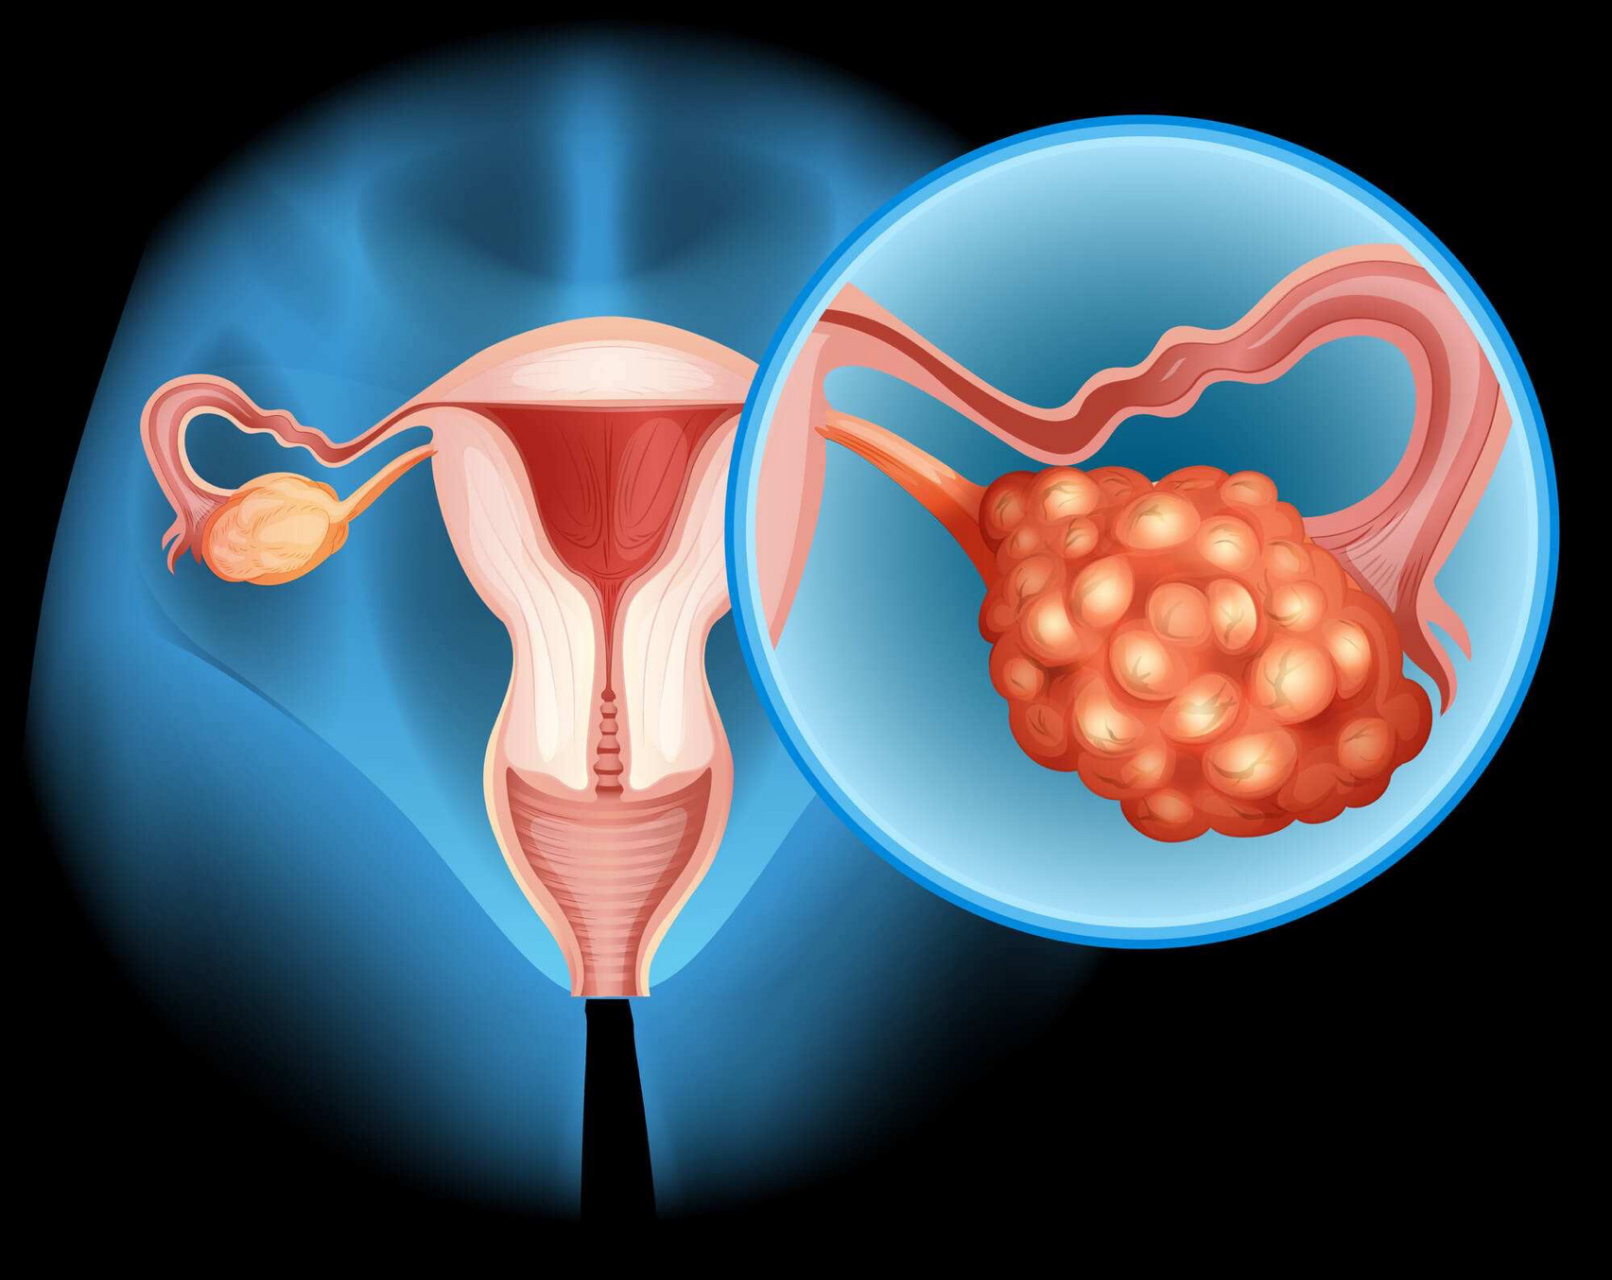 多囊卵巢综合征需要长期用药控制,停药后症状复发,不能治愈